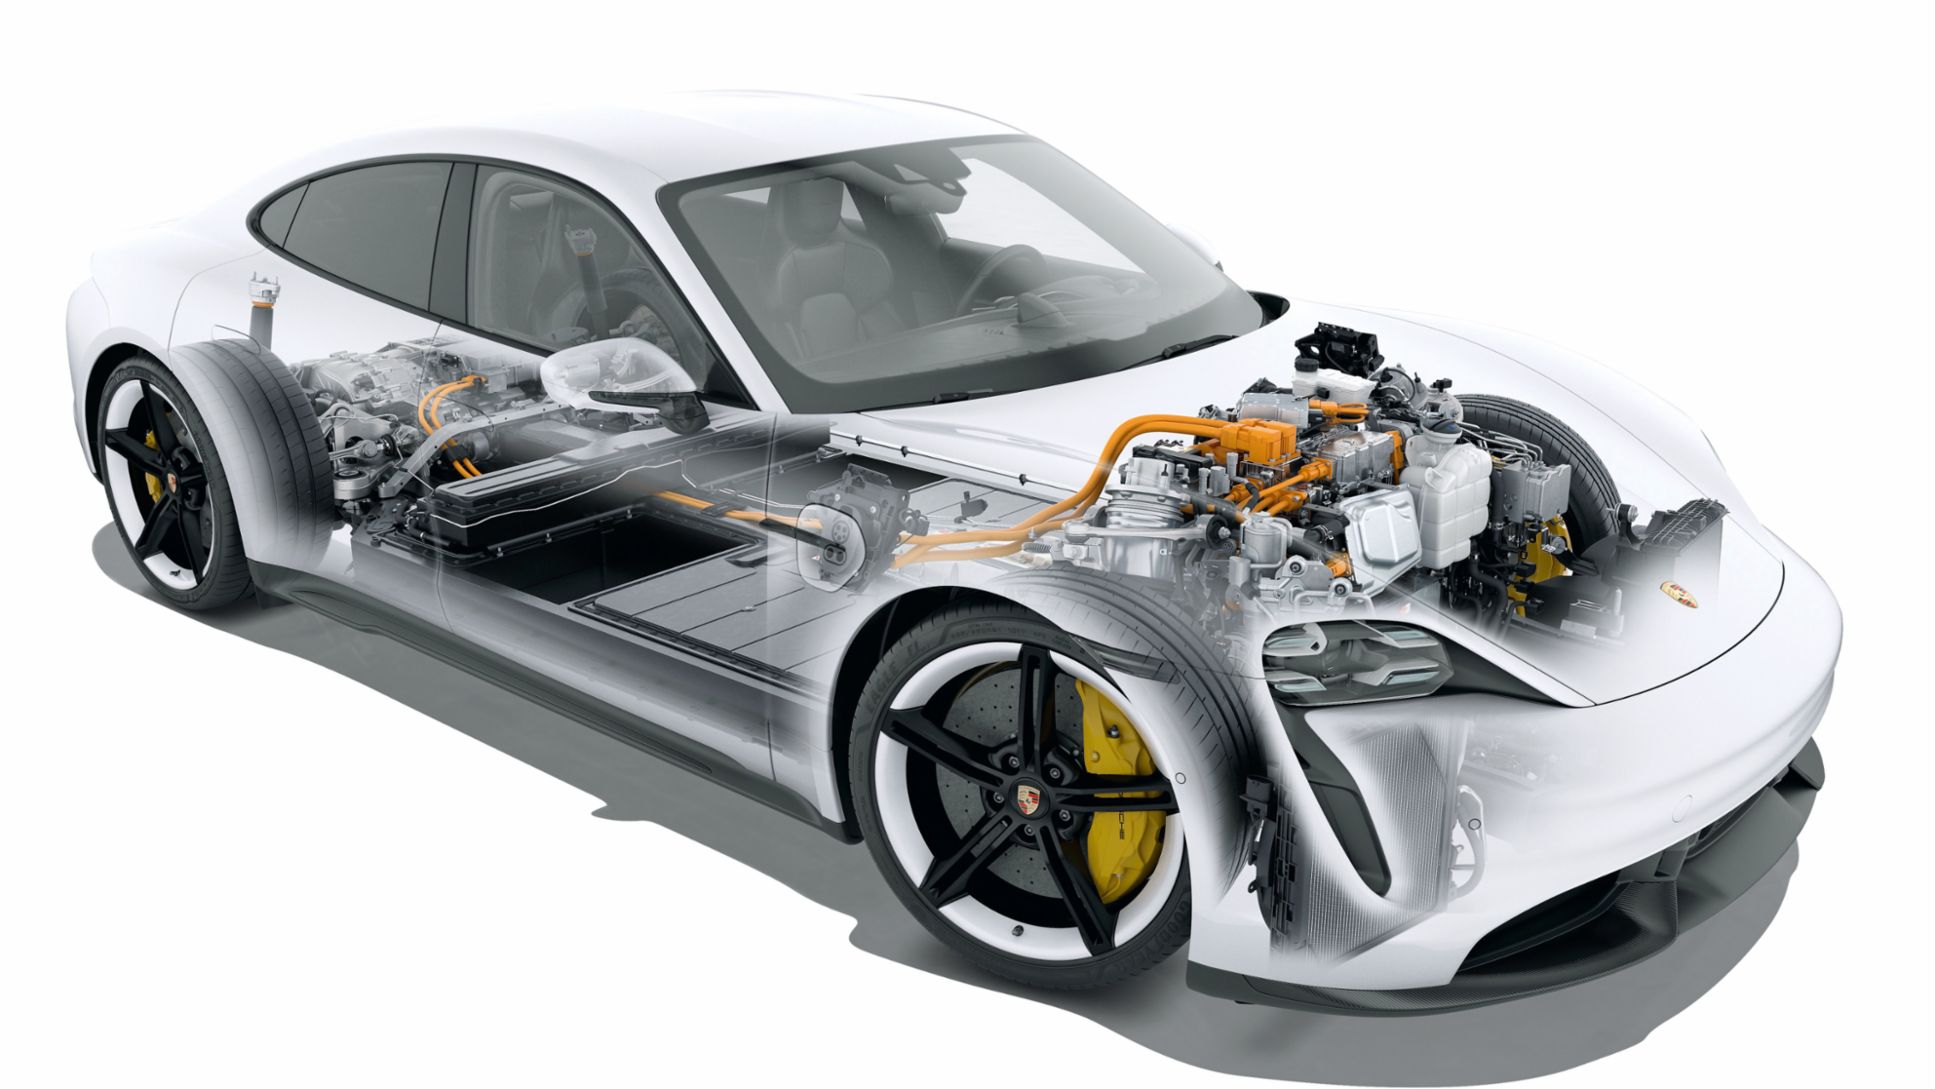 Porsche-Elektromotor, 2021, Porsche AG